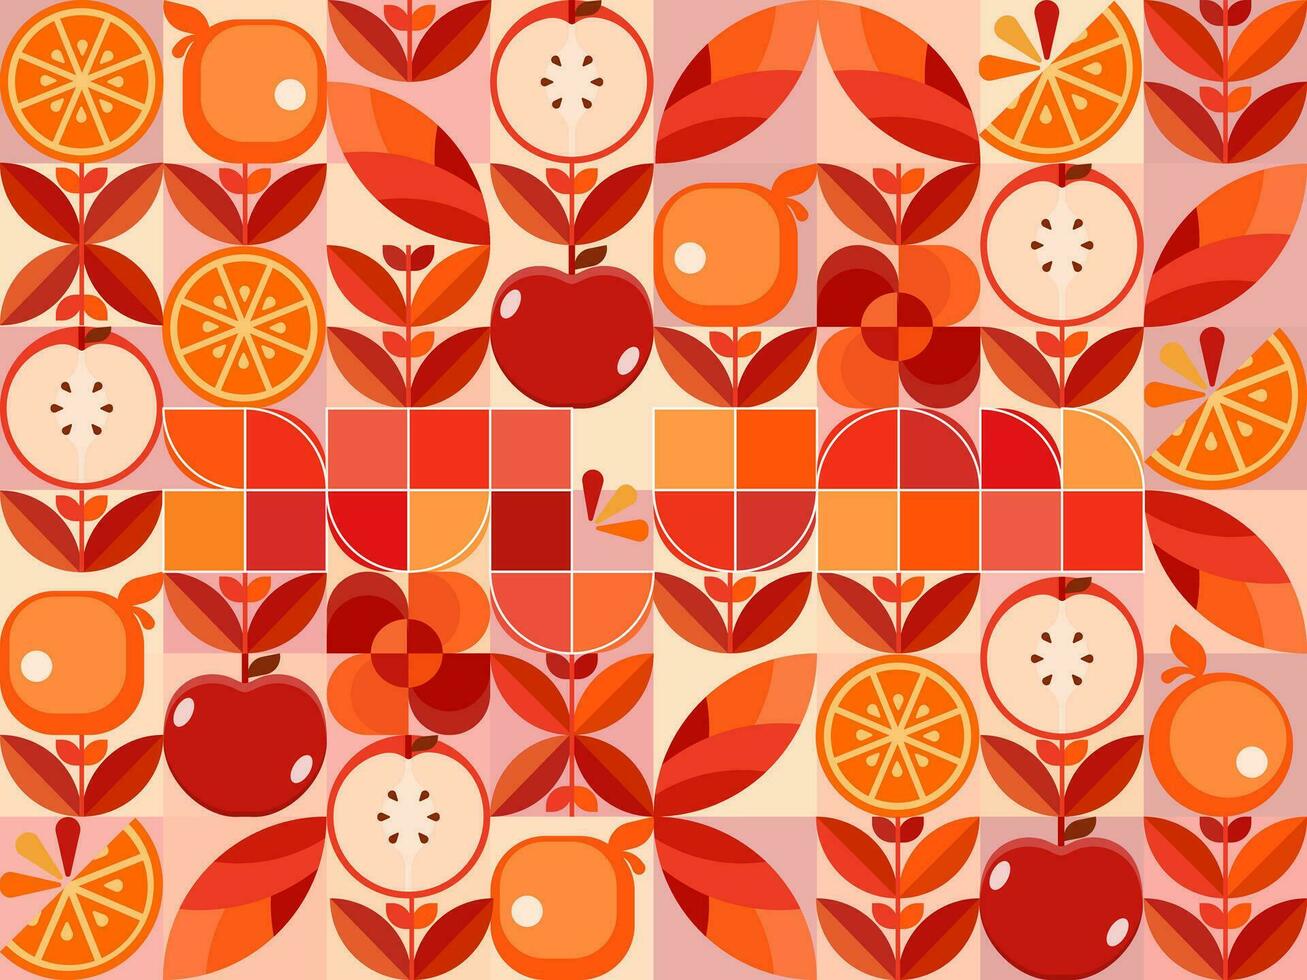 geometrisk former med äpplen och apelsiner för bakgrund i höst vektor